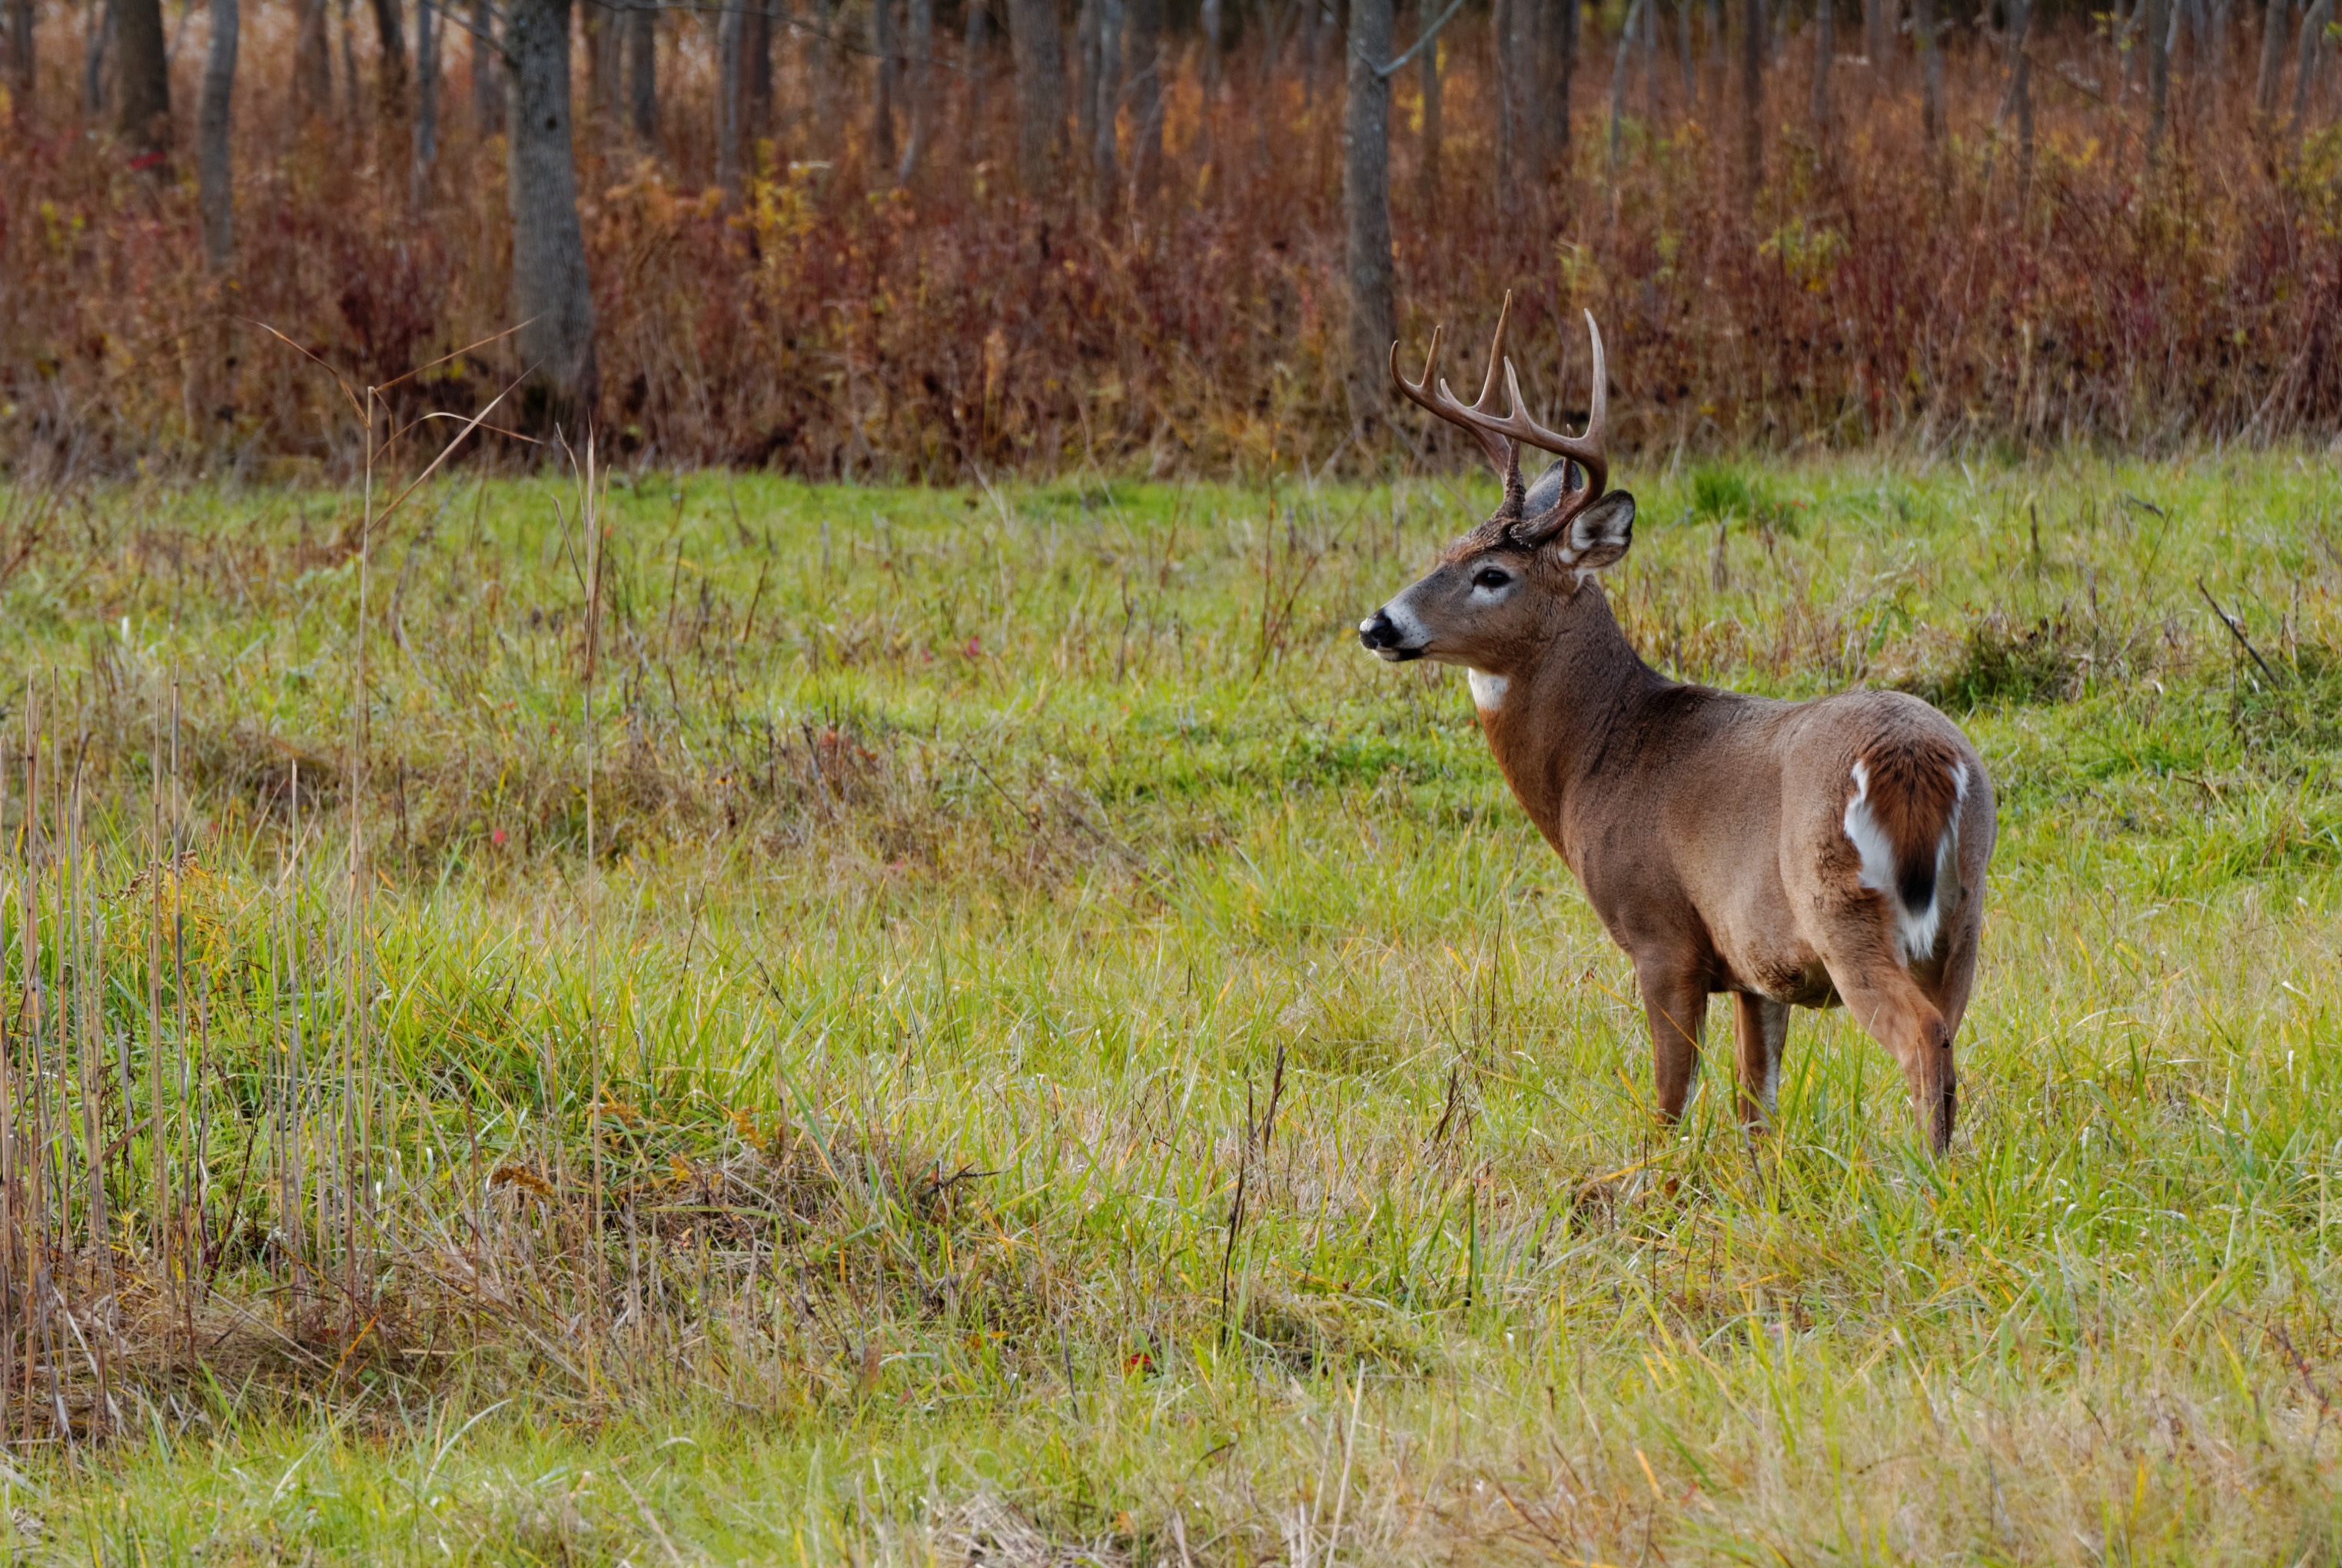 Early season whitetail deer buck standing in a field.